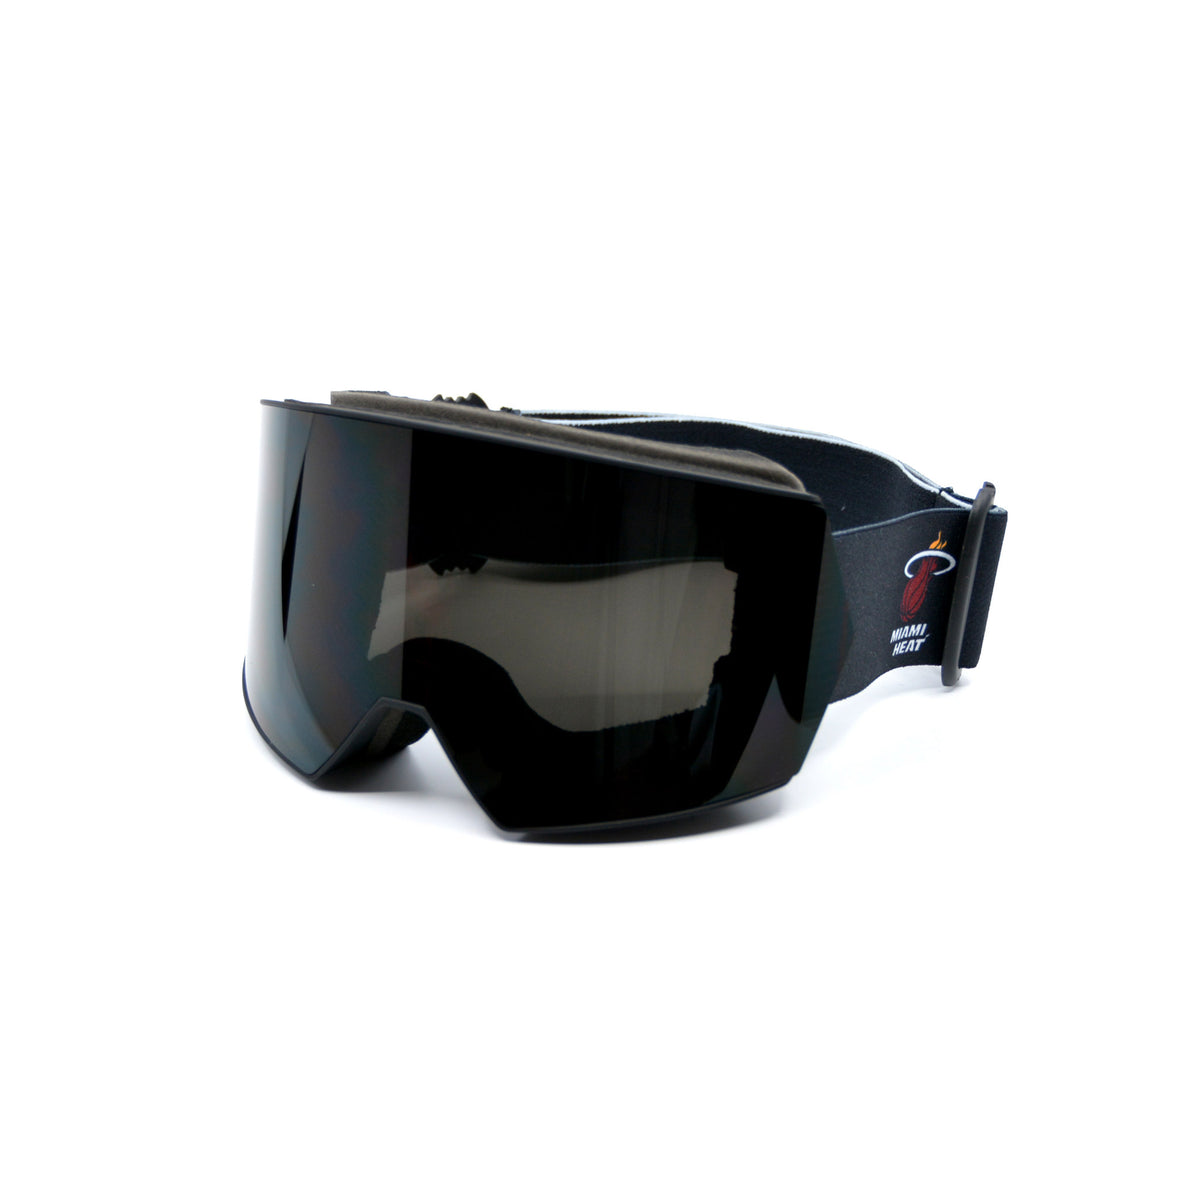 Miami Heat Ski Goggles